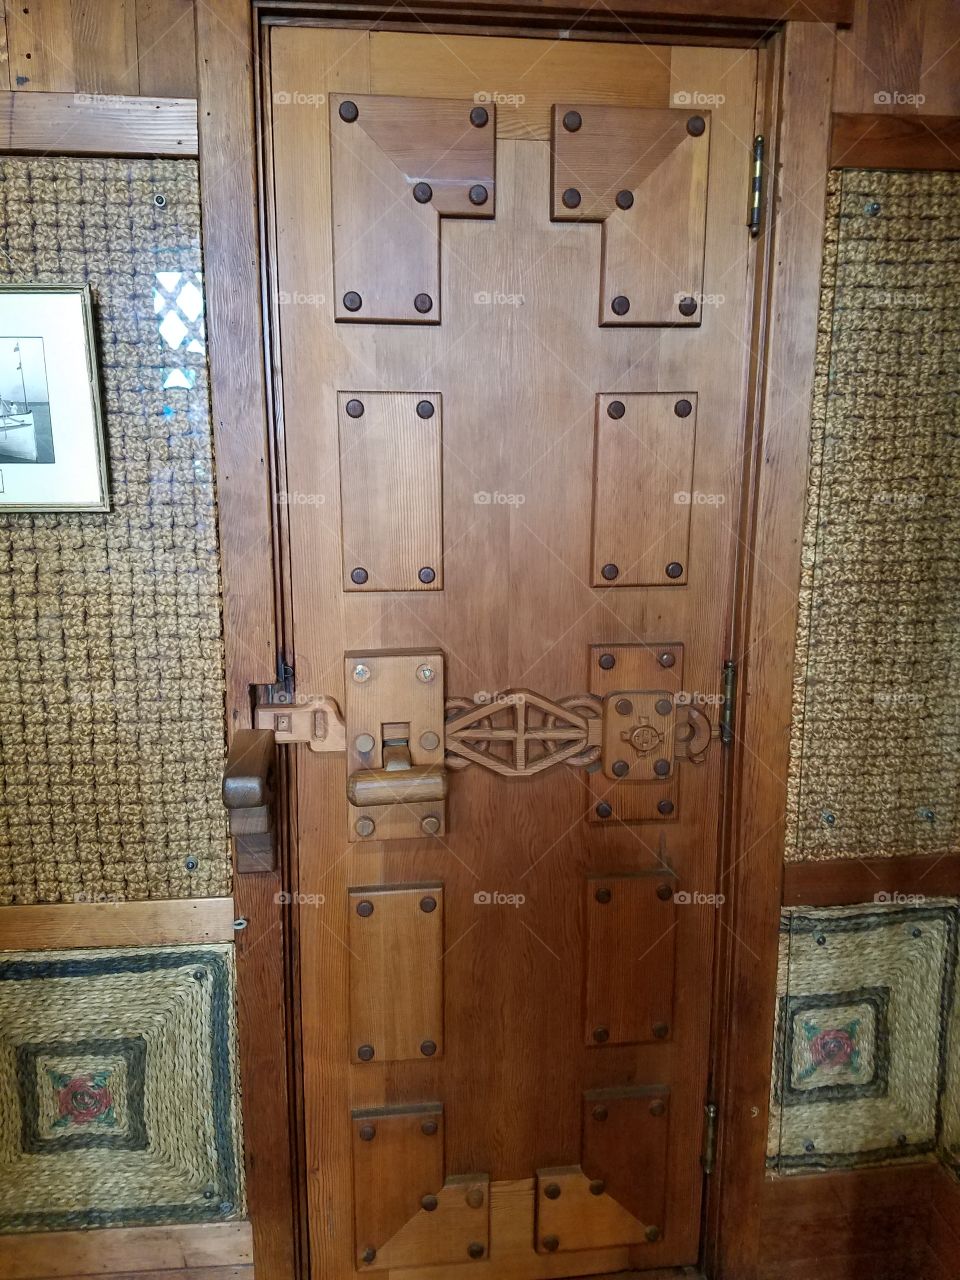 Unique latch on wooden door